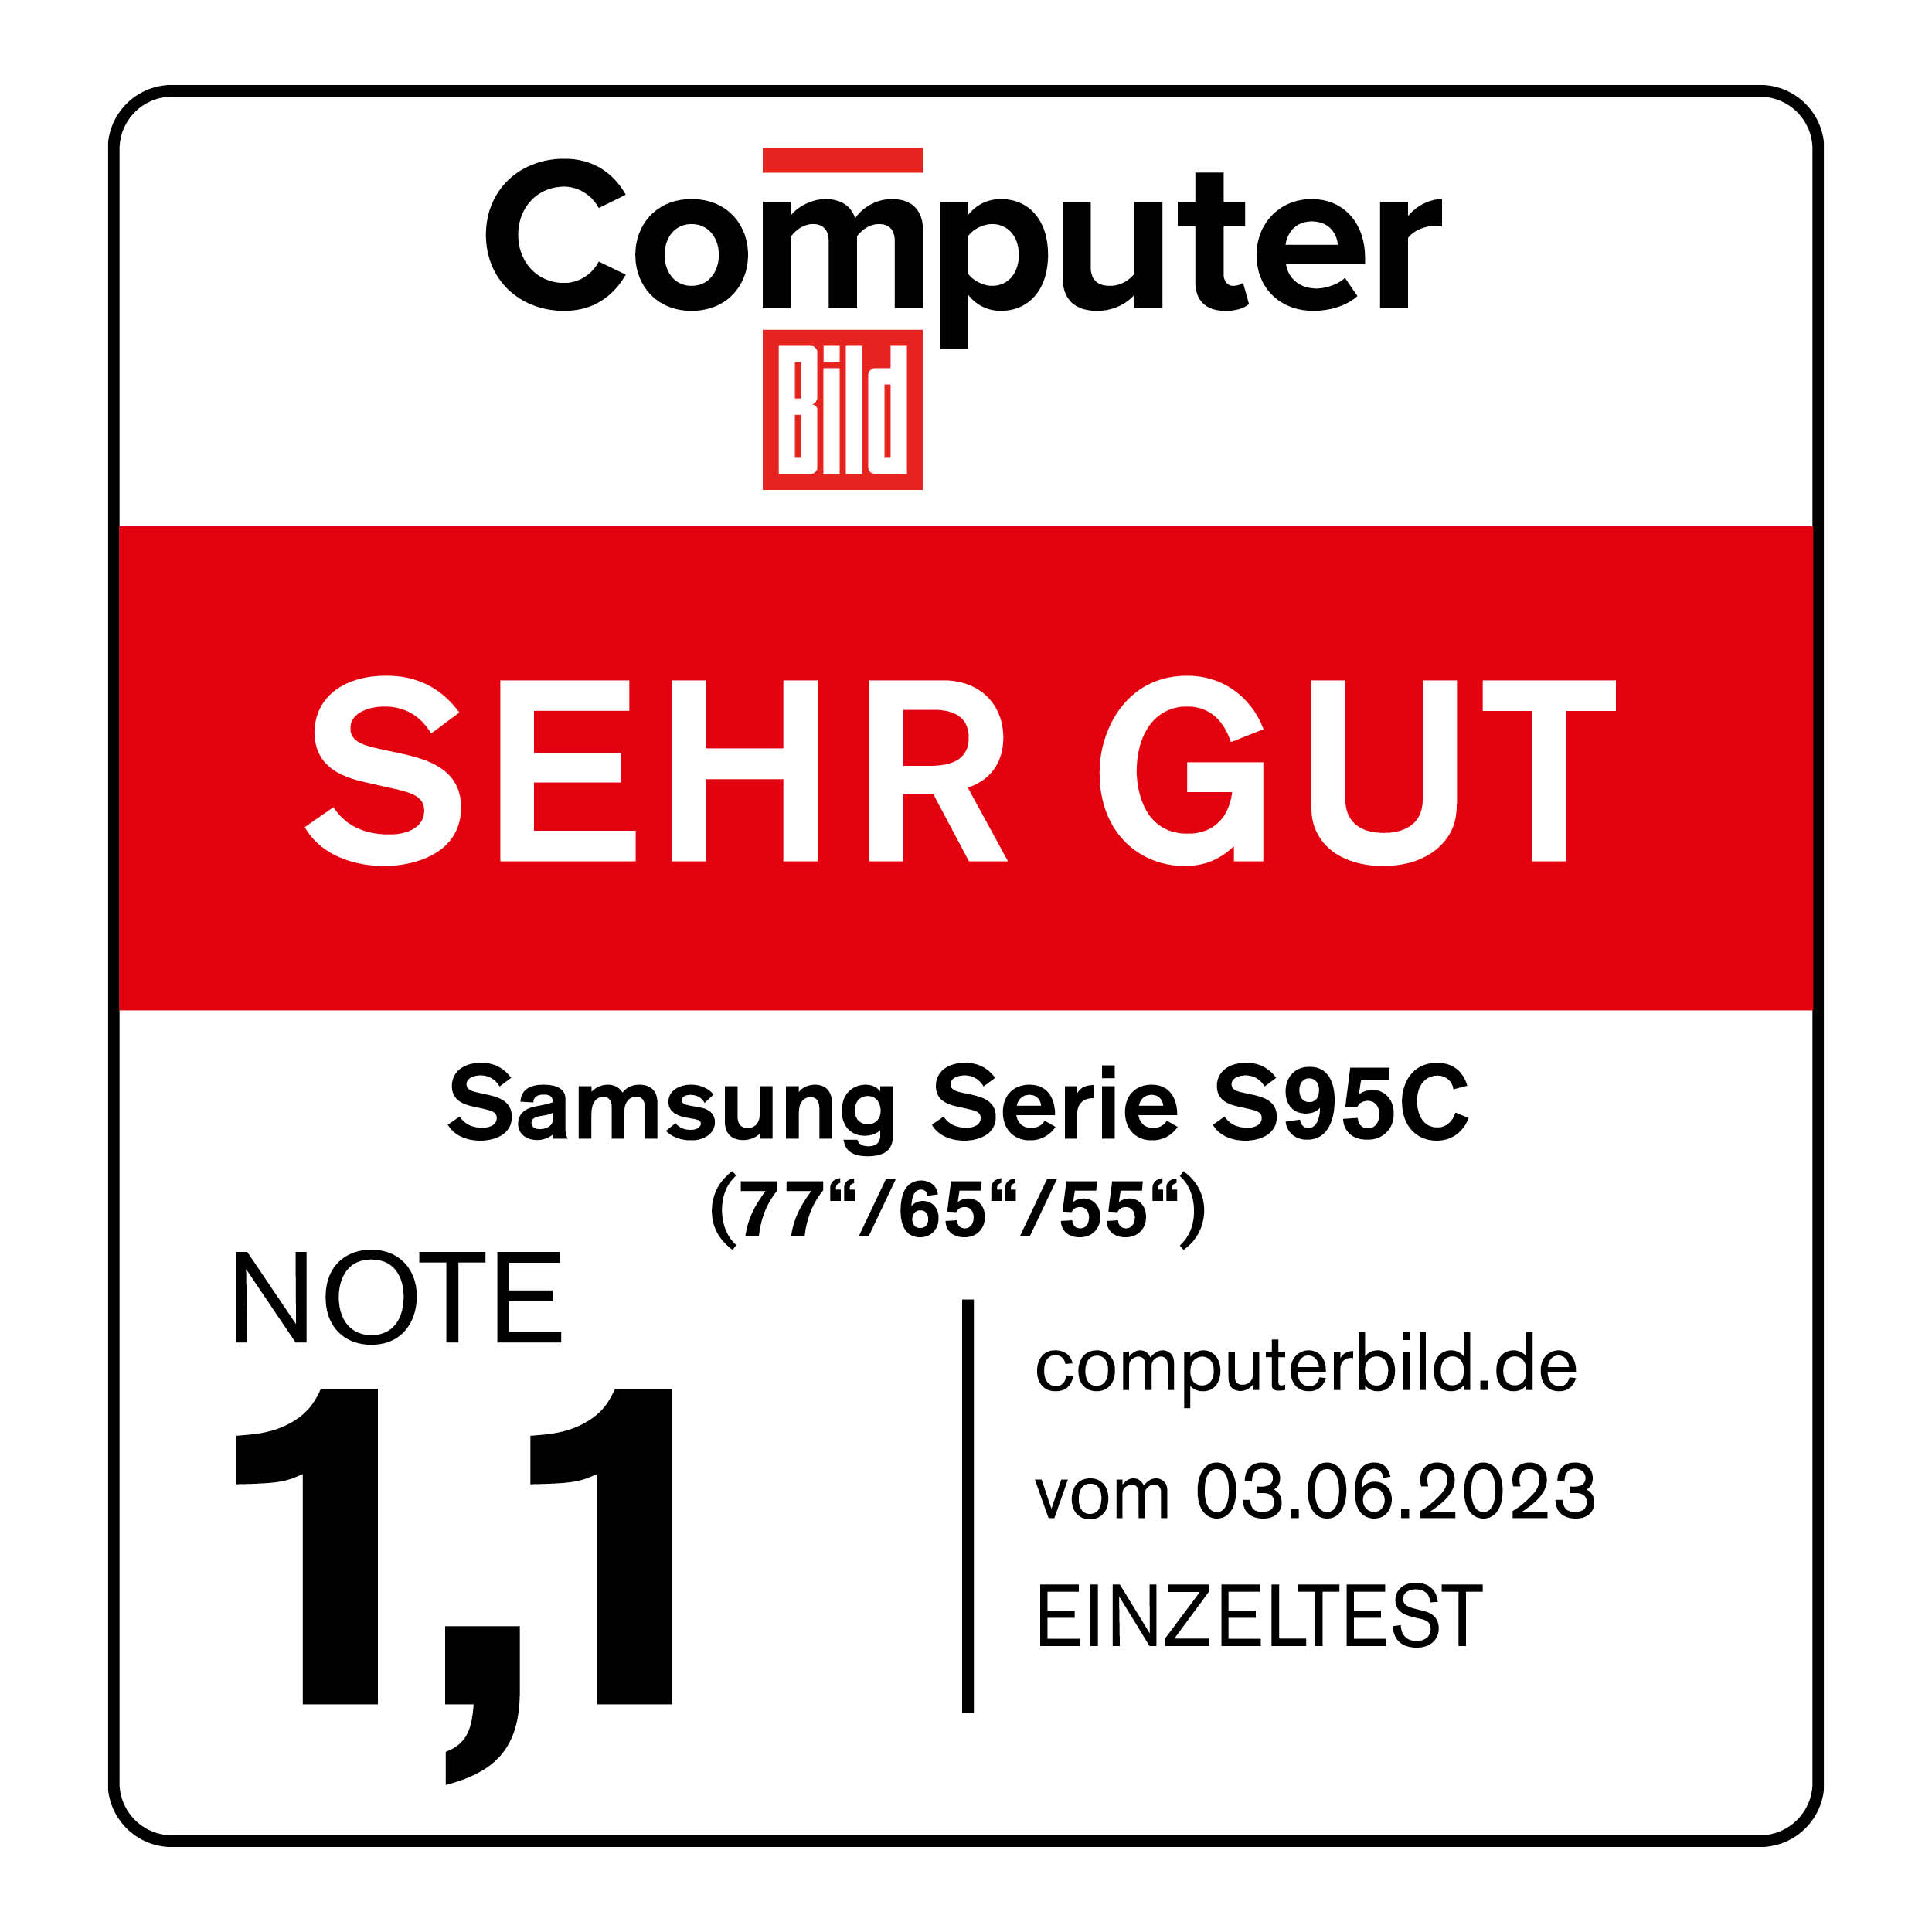 120856_Computer_Bild_sehr_gut_Samsung_Serie_S95C_06_2023_mitAngaben